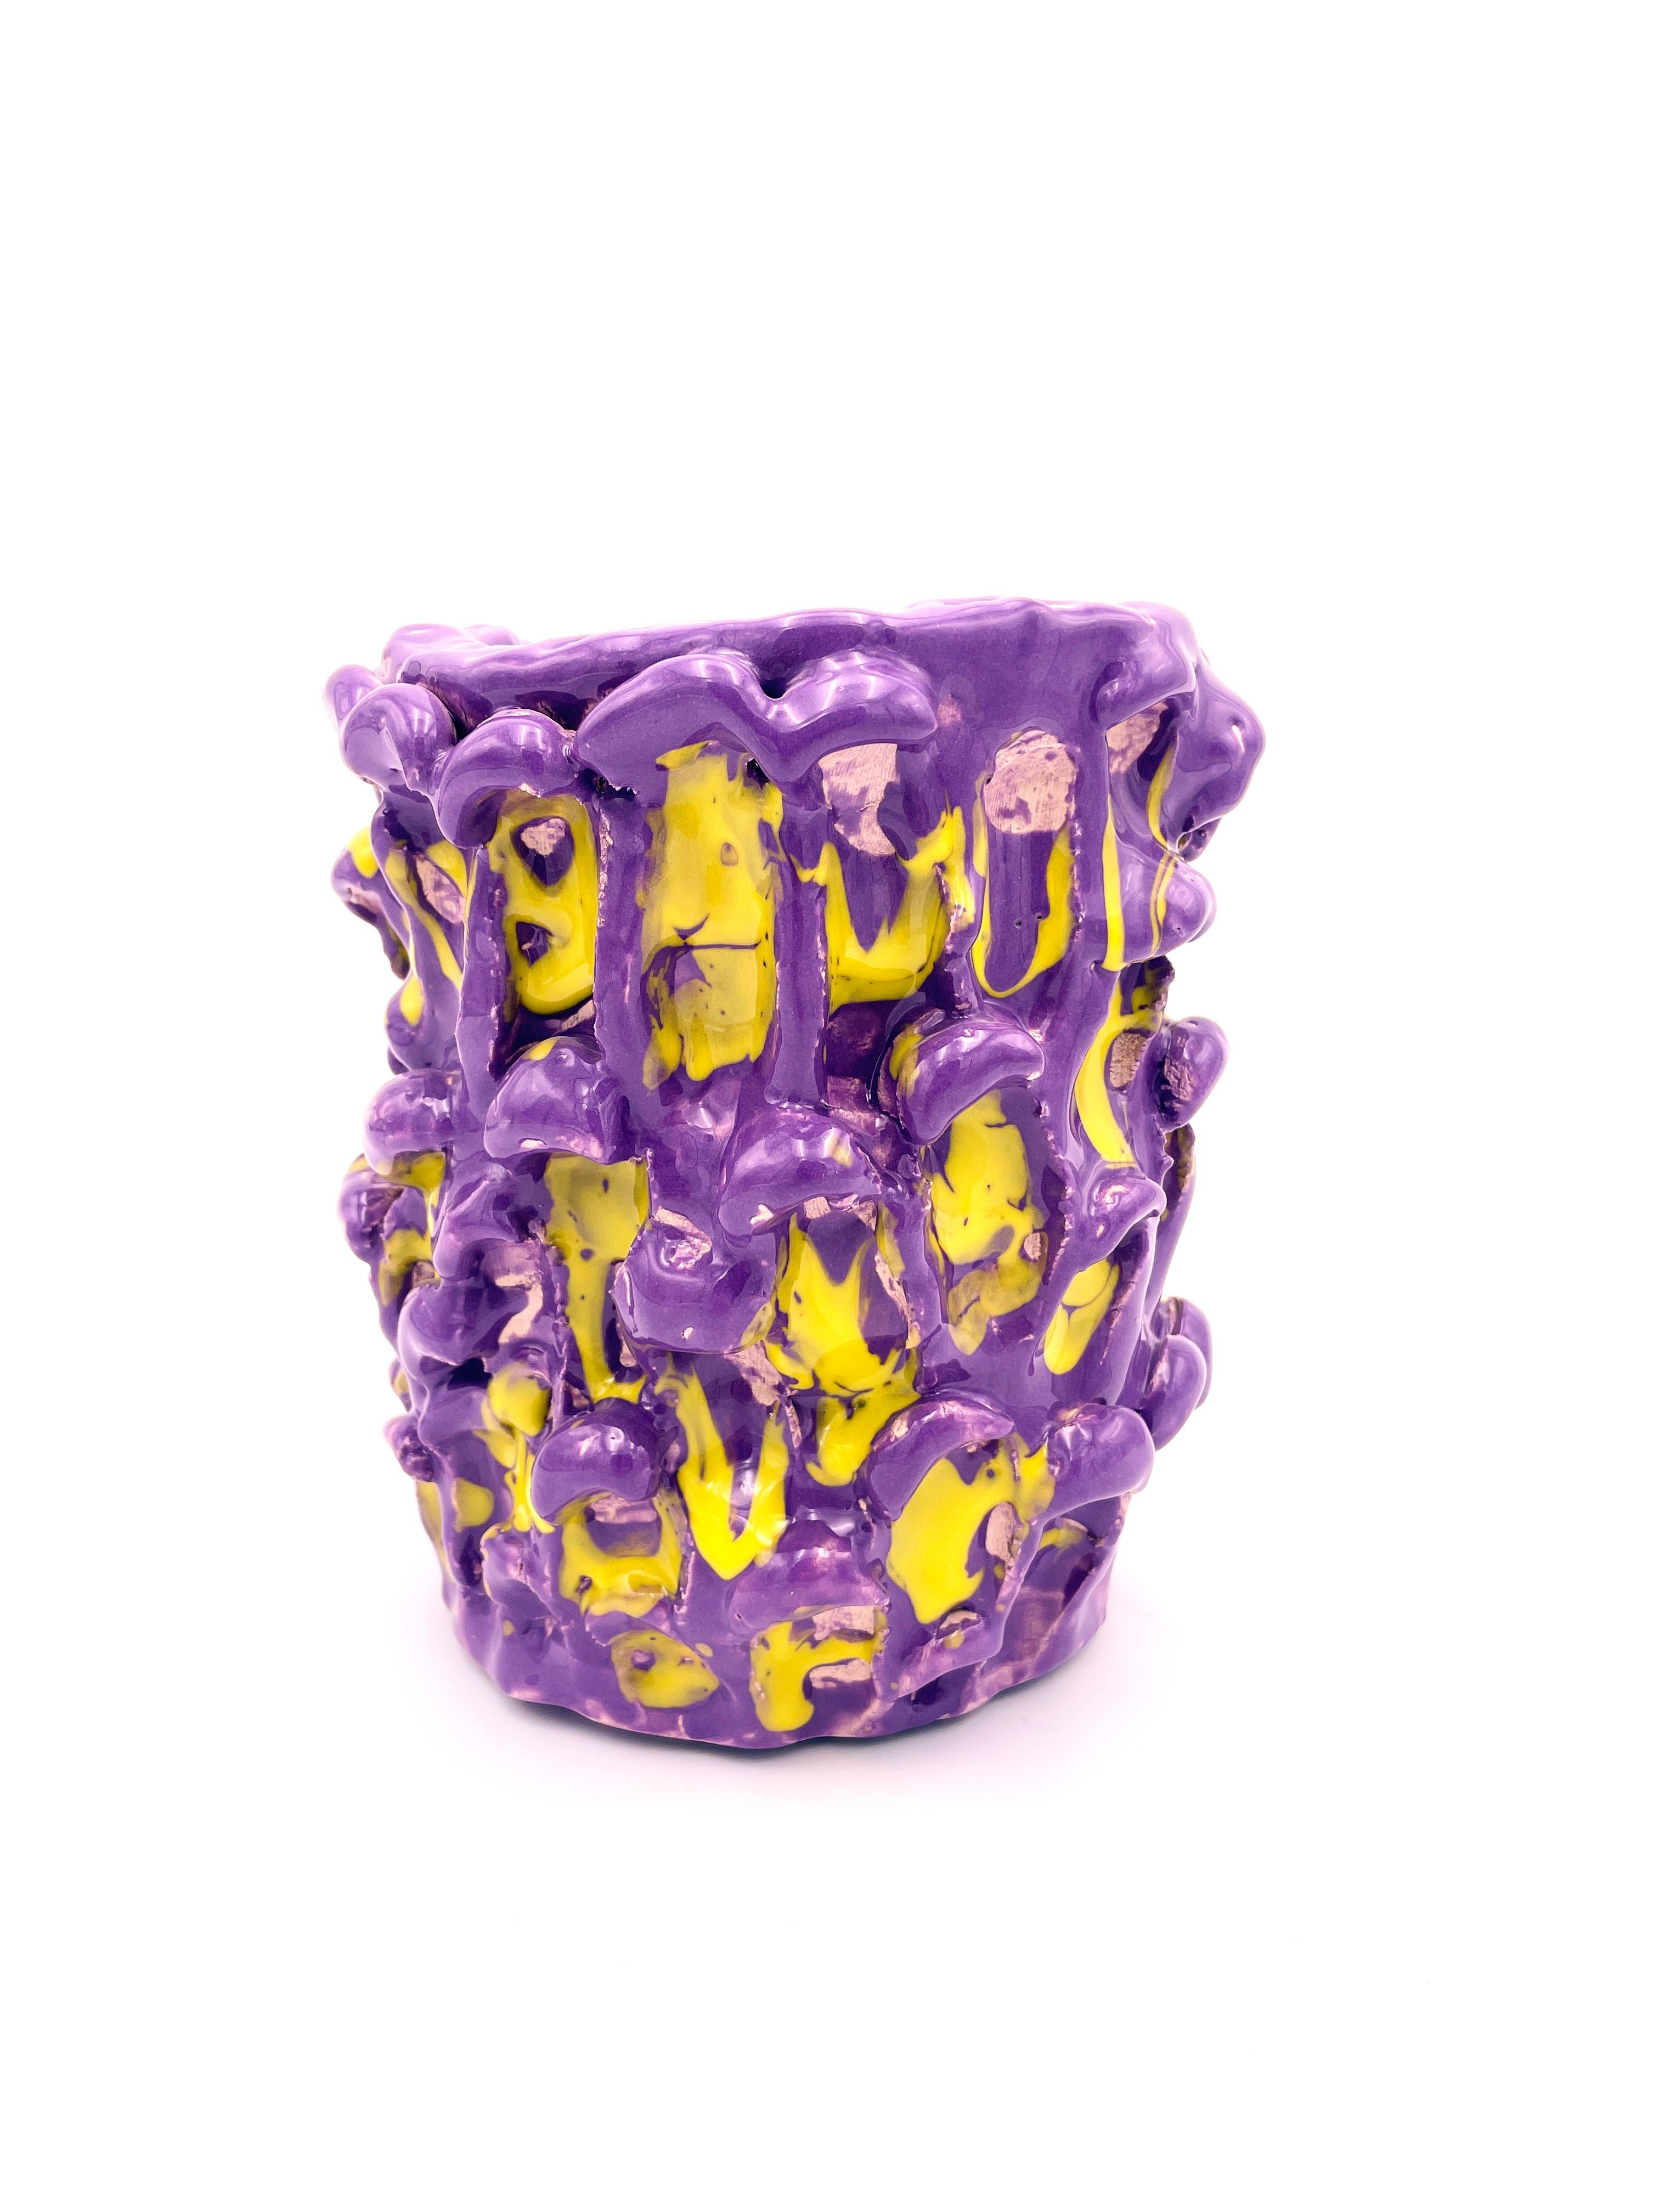 Vase Onda en velours violet et jaune citron 01 / 20 série numérotée
Pièce unique faite à la main
Faïence émaillée de Daria Dazzan
Faïence, émaux
18 X 16 cm ab.

Vase en faïence fait à la main par Daria Dazzan, pièce unique, numérotée.
Daria